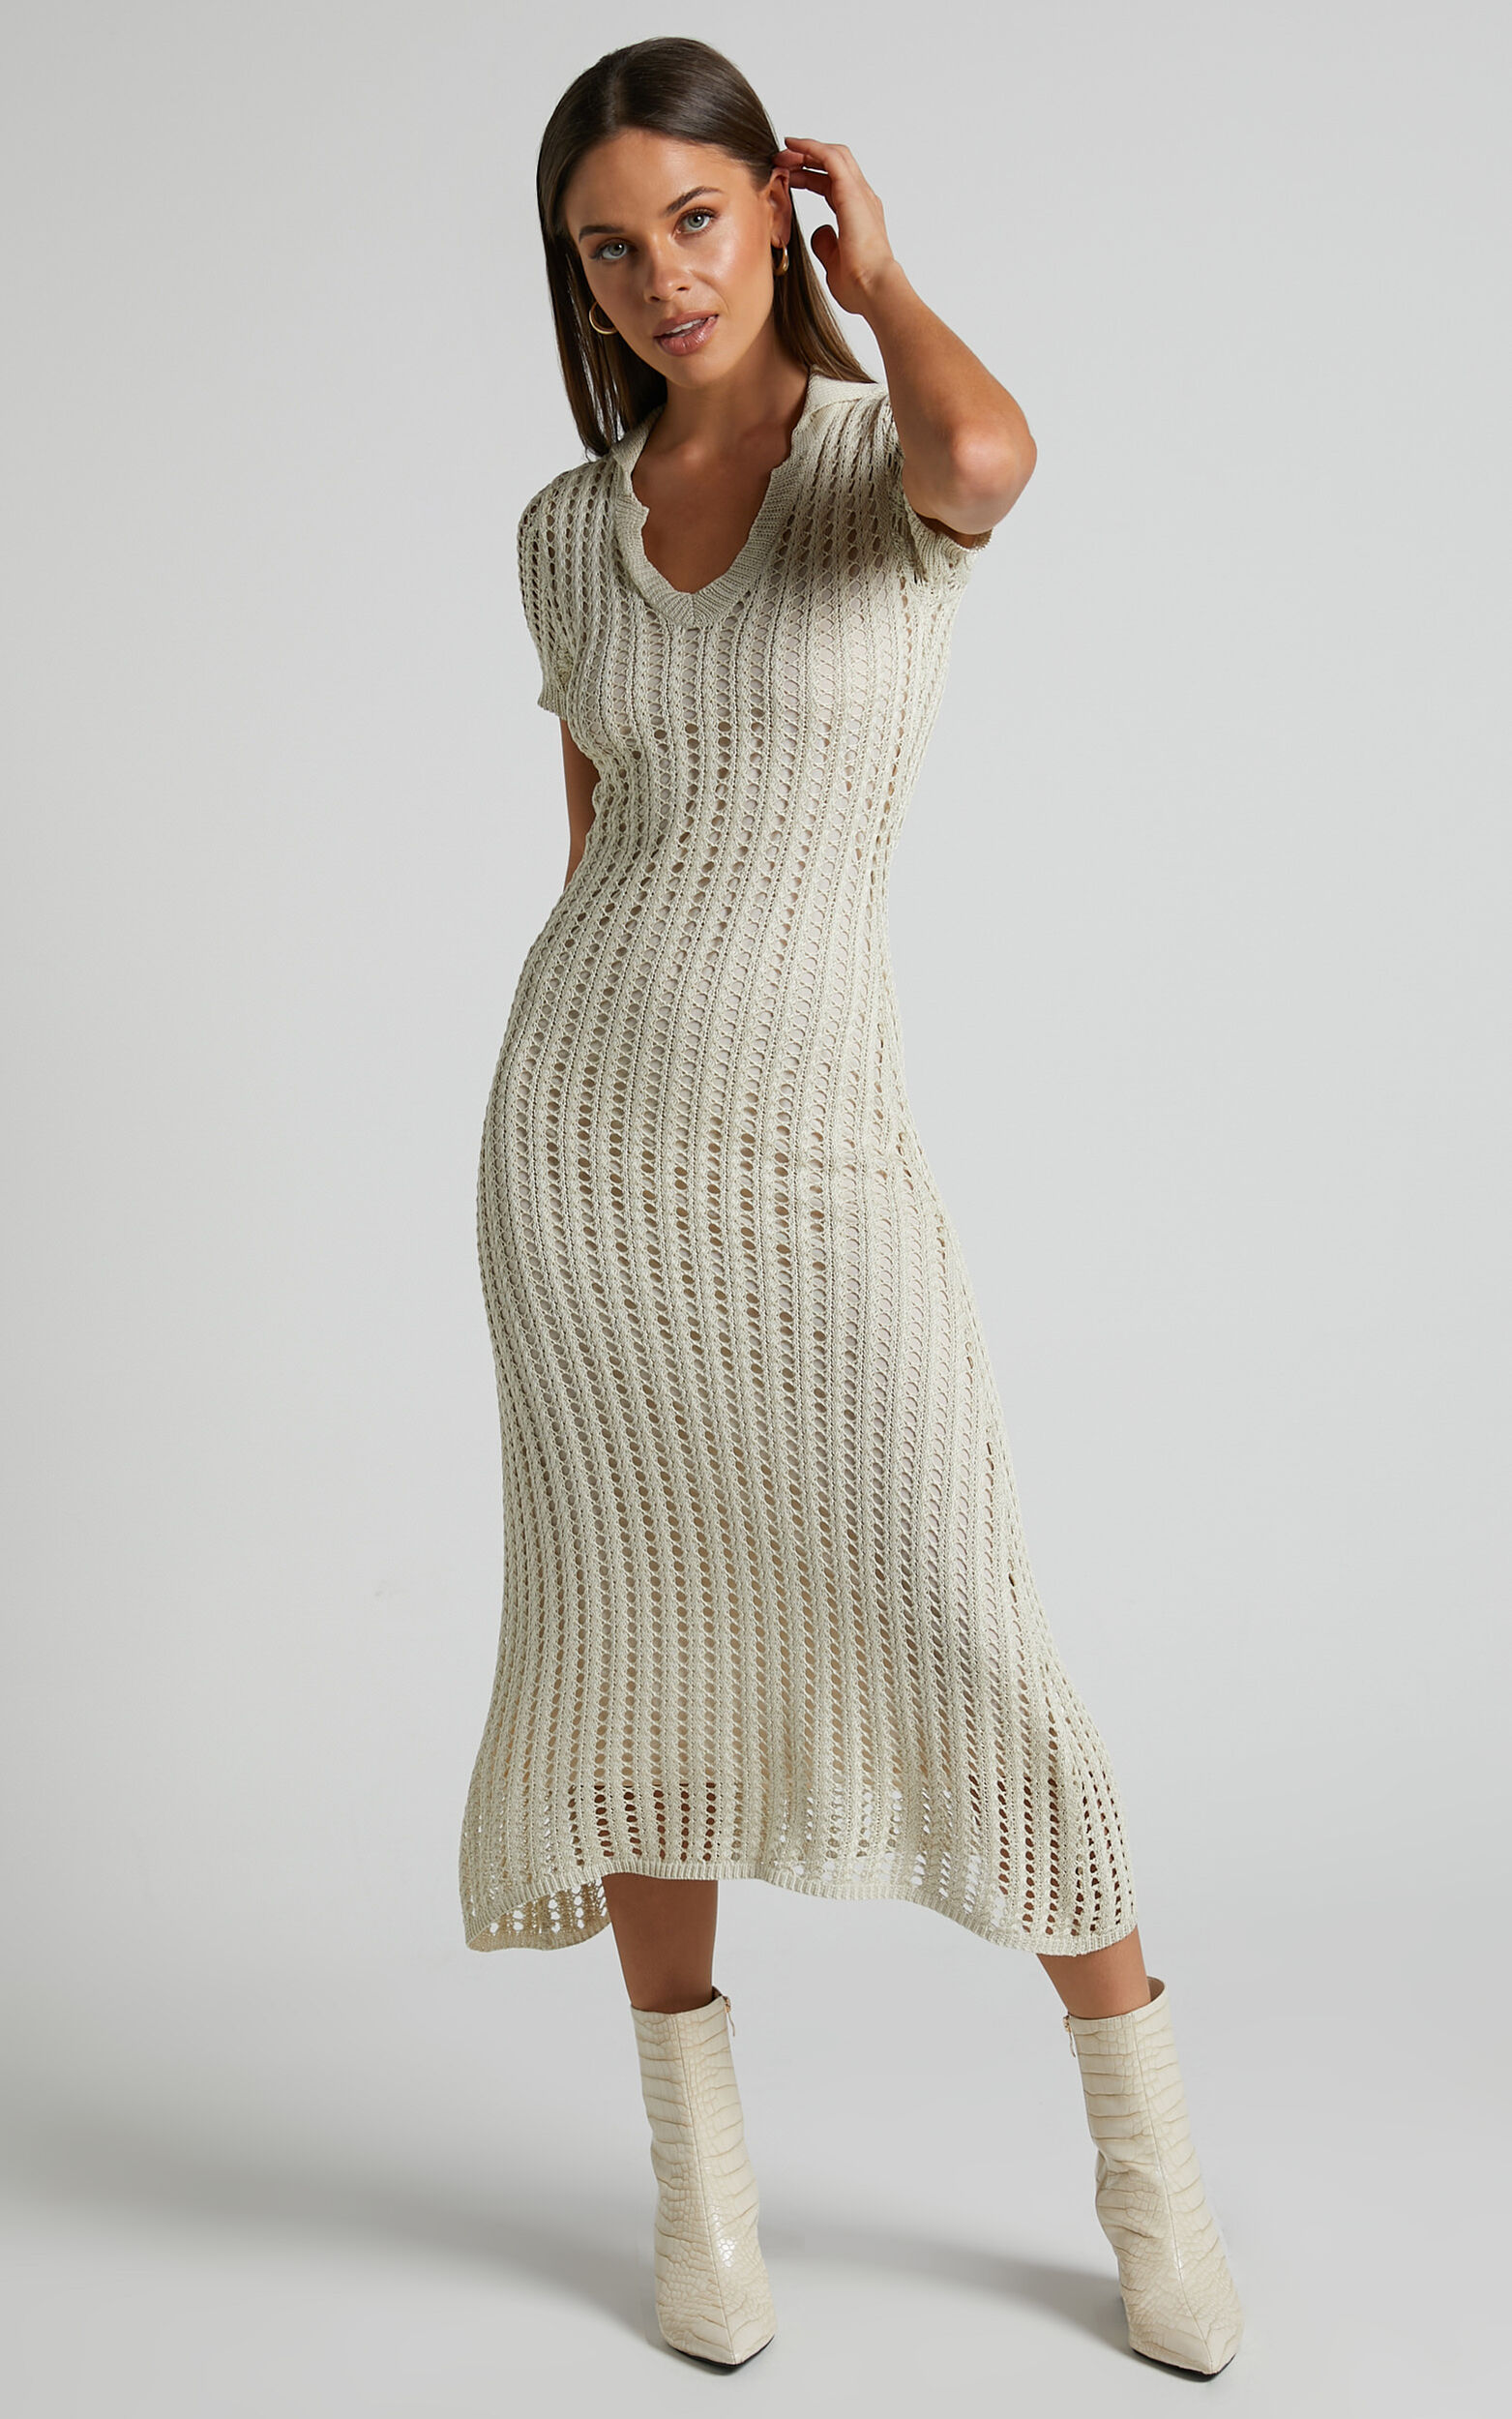 Jolie Moi Crochet Knit Long Sleeve Top, Cream